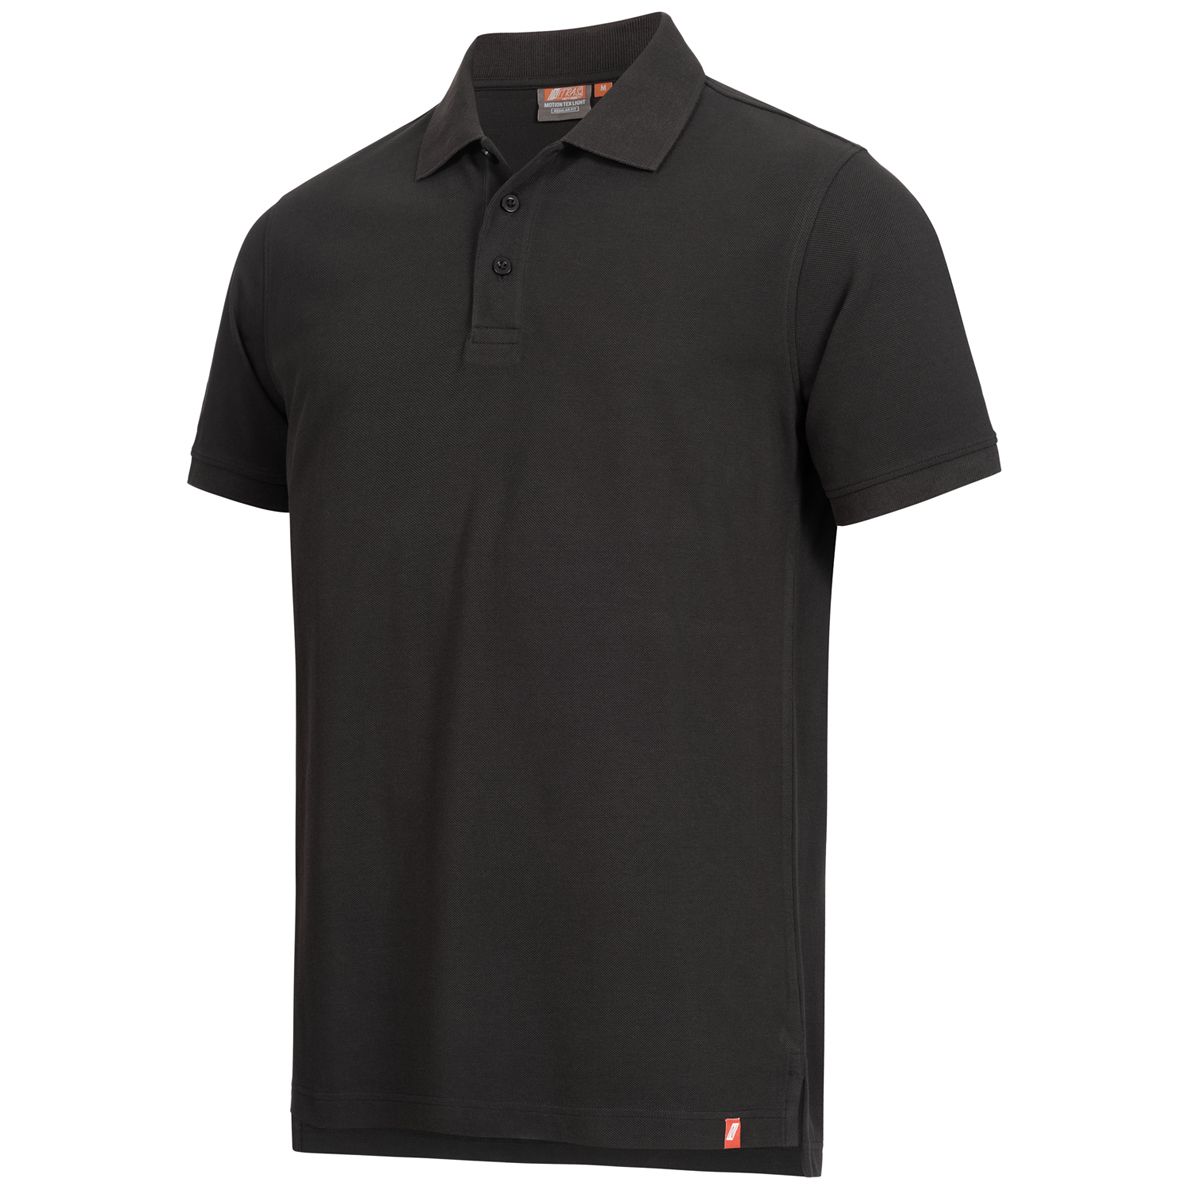 ABVERKAUF: NITRAS MOTION TEX LIGHT Arbeits-T-Shirt - Kurzarm-Polo-Hemd aus 100% Baumwolle - für die Arbeit - Schwarz - S